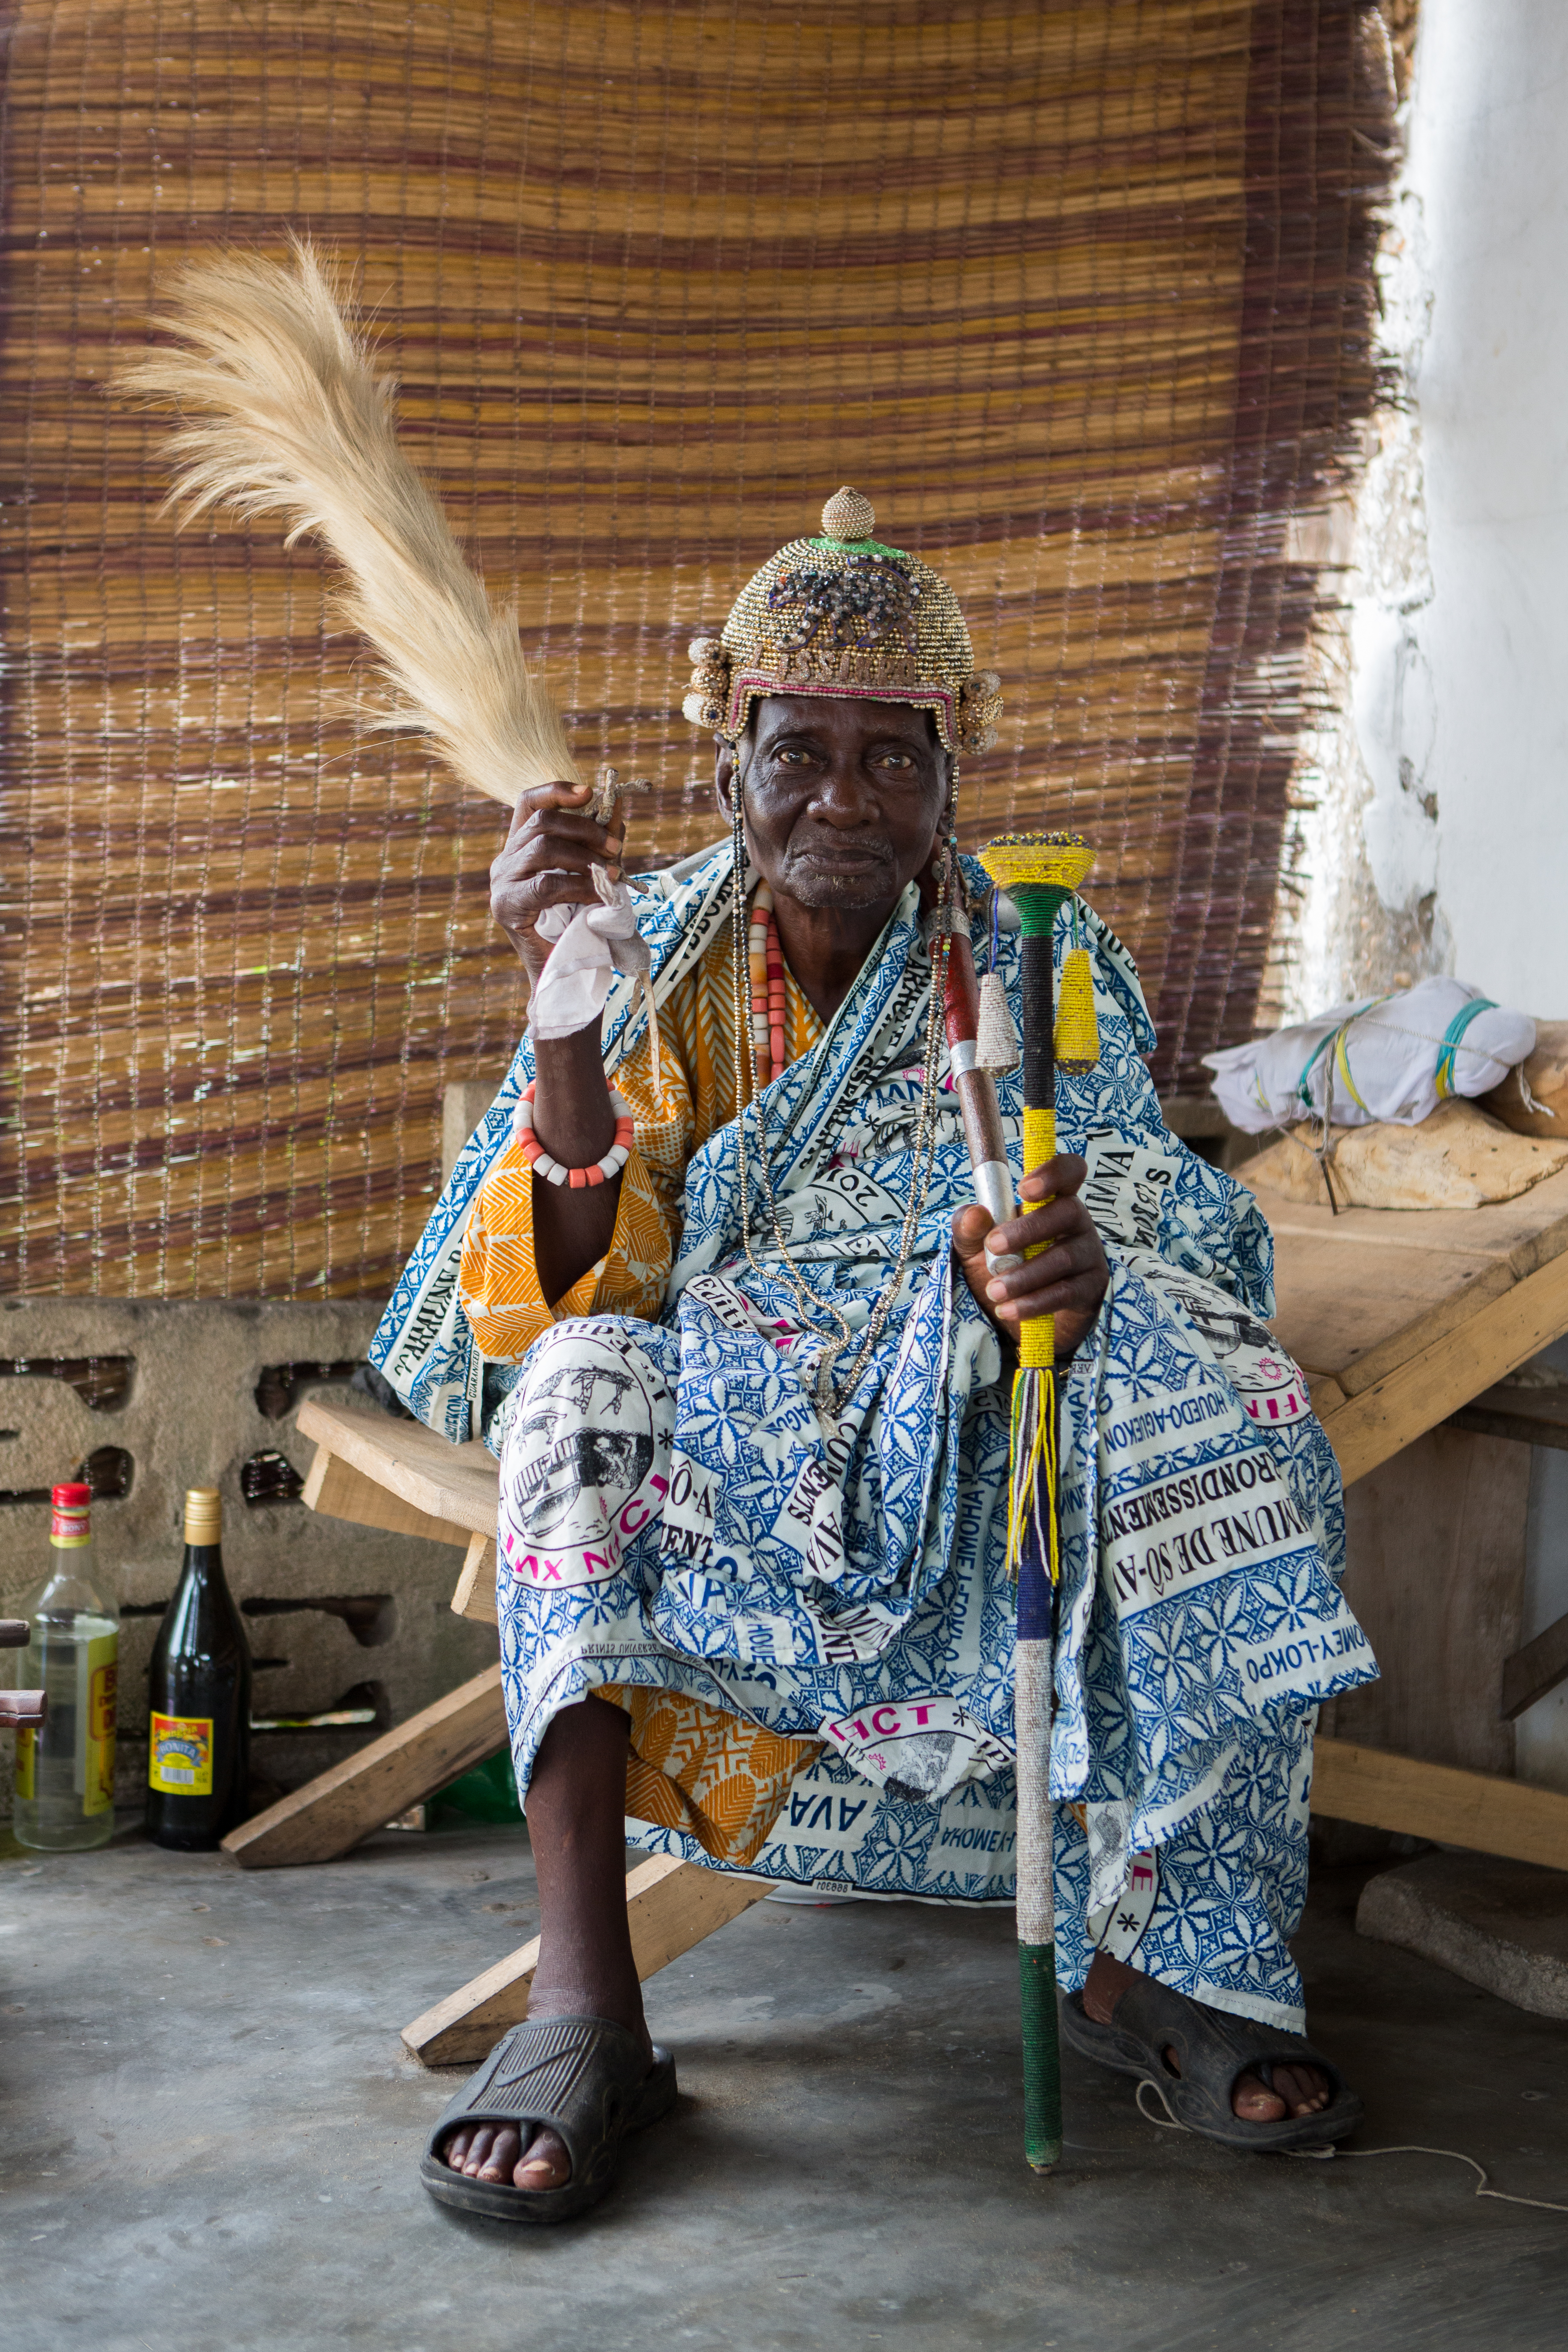 Ganvié.
The king of Ganvié.
Ganvié is a lakeside city in southern Benin that is part of the municipality of Sô-Ava in the Atlantic department, located on Lake Nokoué north of the metropolis of Cotonou, it is listed since 1996 on the indicative list of UNESCO but it is not yet classified.
Ganvié is one of the six projects included in the 2016-2021 Government Action Program (GAP) to develop tourism.
The cost of the project is estimated at 20 billion CFA francs (about 30.5 million euros).It includes sanitation and cleaning of the lake (from mid-2018 to the end of 2019. Ganvié 1, Benin - March 28, 2018.
Vie sur l’eau à Ganvié. 
Le roi de ganvié.
Ganvié est une cité lacustre du sud du Bénin qui fait partie de la commune de Sô-Ava dans le département de l'Atlantique, situé sur le lac Nokoué au nord de la métropole de Cotonou, elle est inscrite depuis 1996 sur la liste indicative de l'UNESCO mais elle n’est pas encore classée.
Ganvié fait partie des six projets retenus dans le Programme d’actions du gouvernement (PAG) 2016-2021 pour développer le tourisme.
Le coût du projet est estimé à 20 milliards de F CFA (près de 30,5 millions d’euros). Il comprend l’assainissement et le curage du lac (de la mi-2018 à la fin de 2019. Ganvié 1, Bénin- 28 mars 2018., 2018.